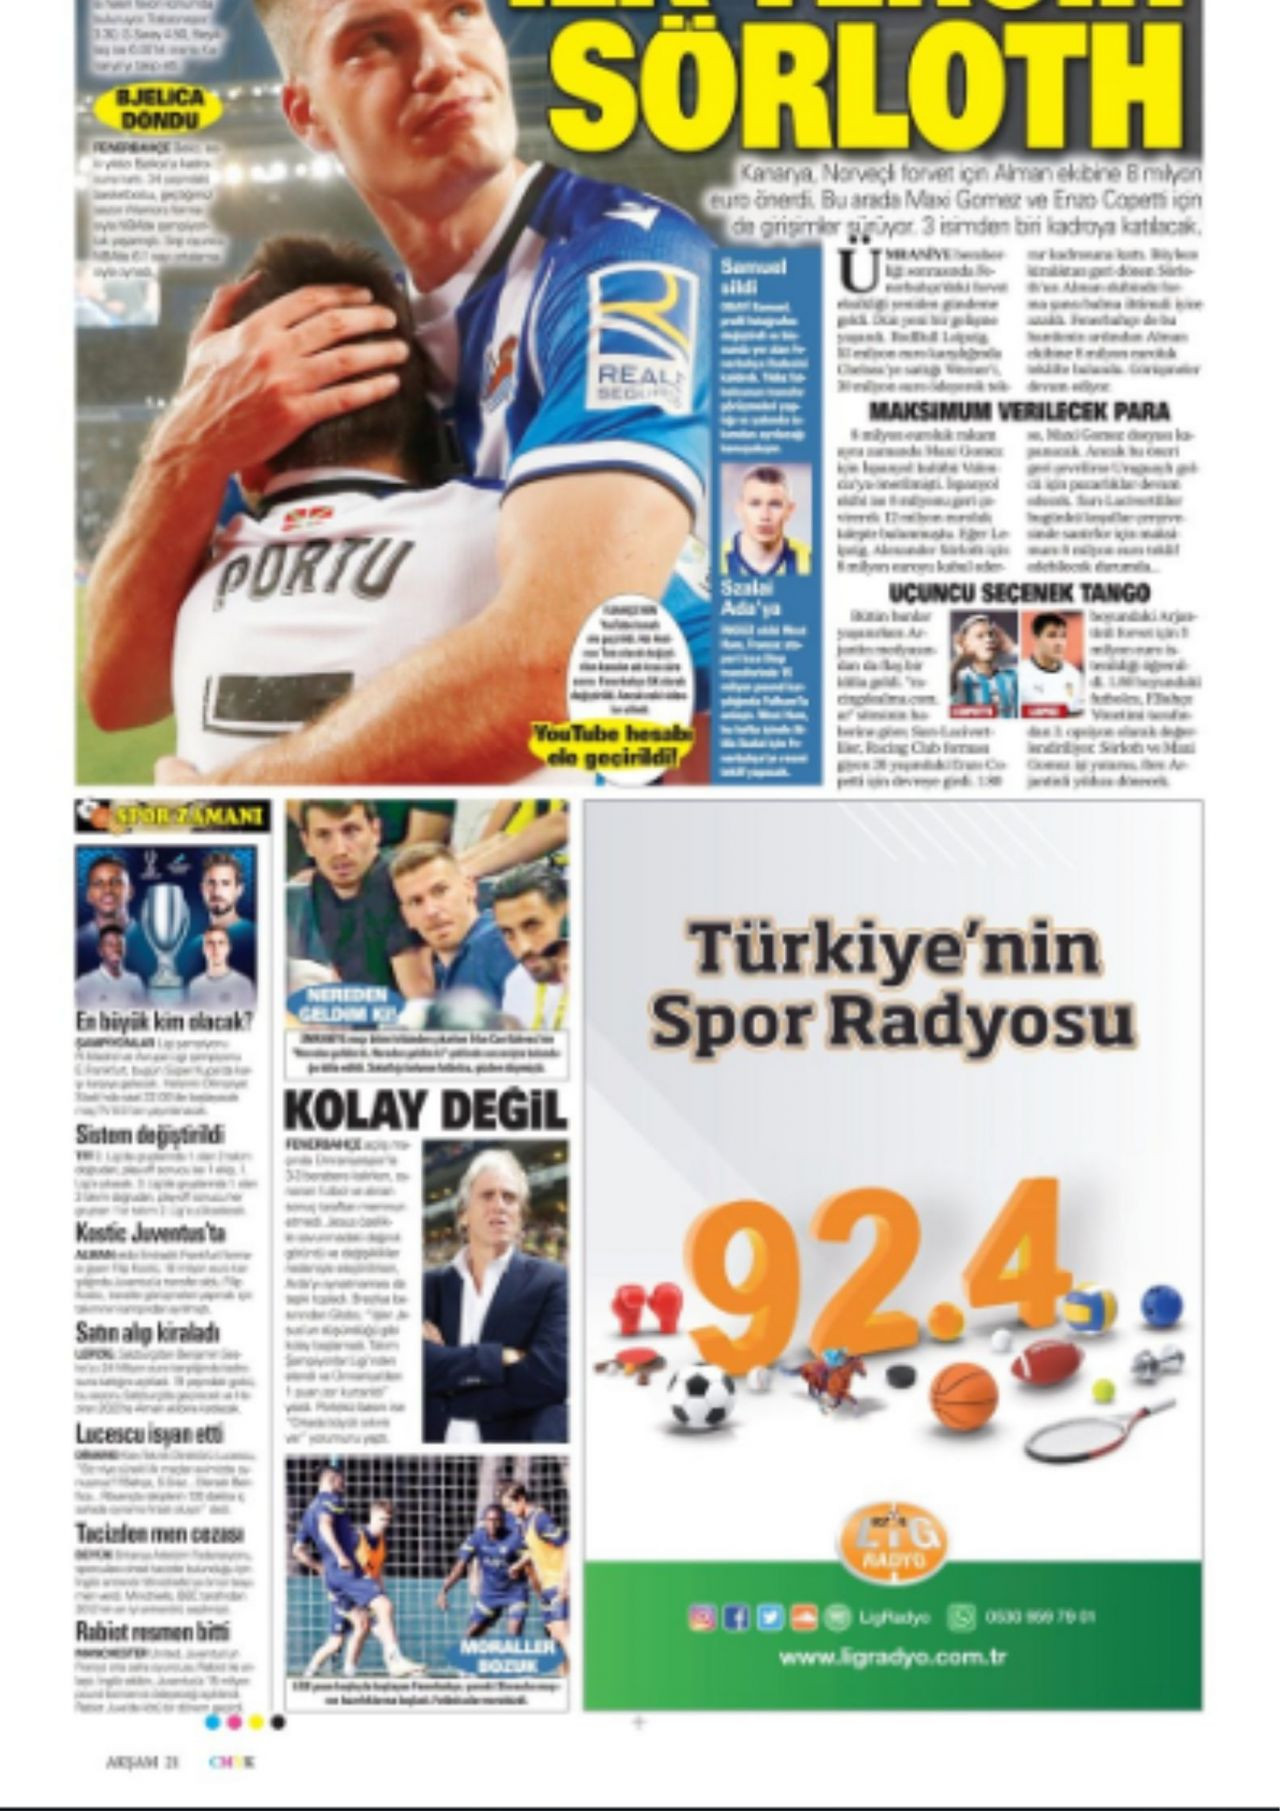 10 Ağustos 2022 Günün gazetelerdeki spor manşetleri - Sayfa 1